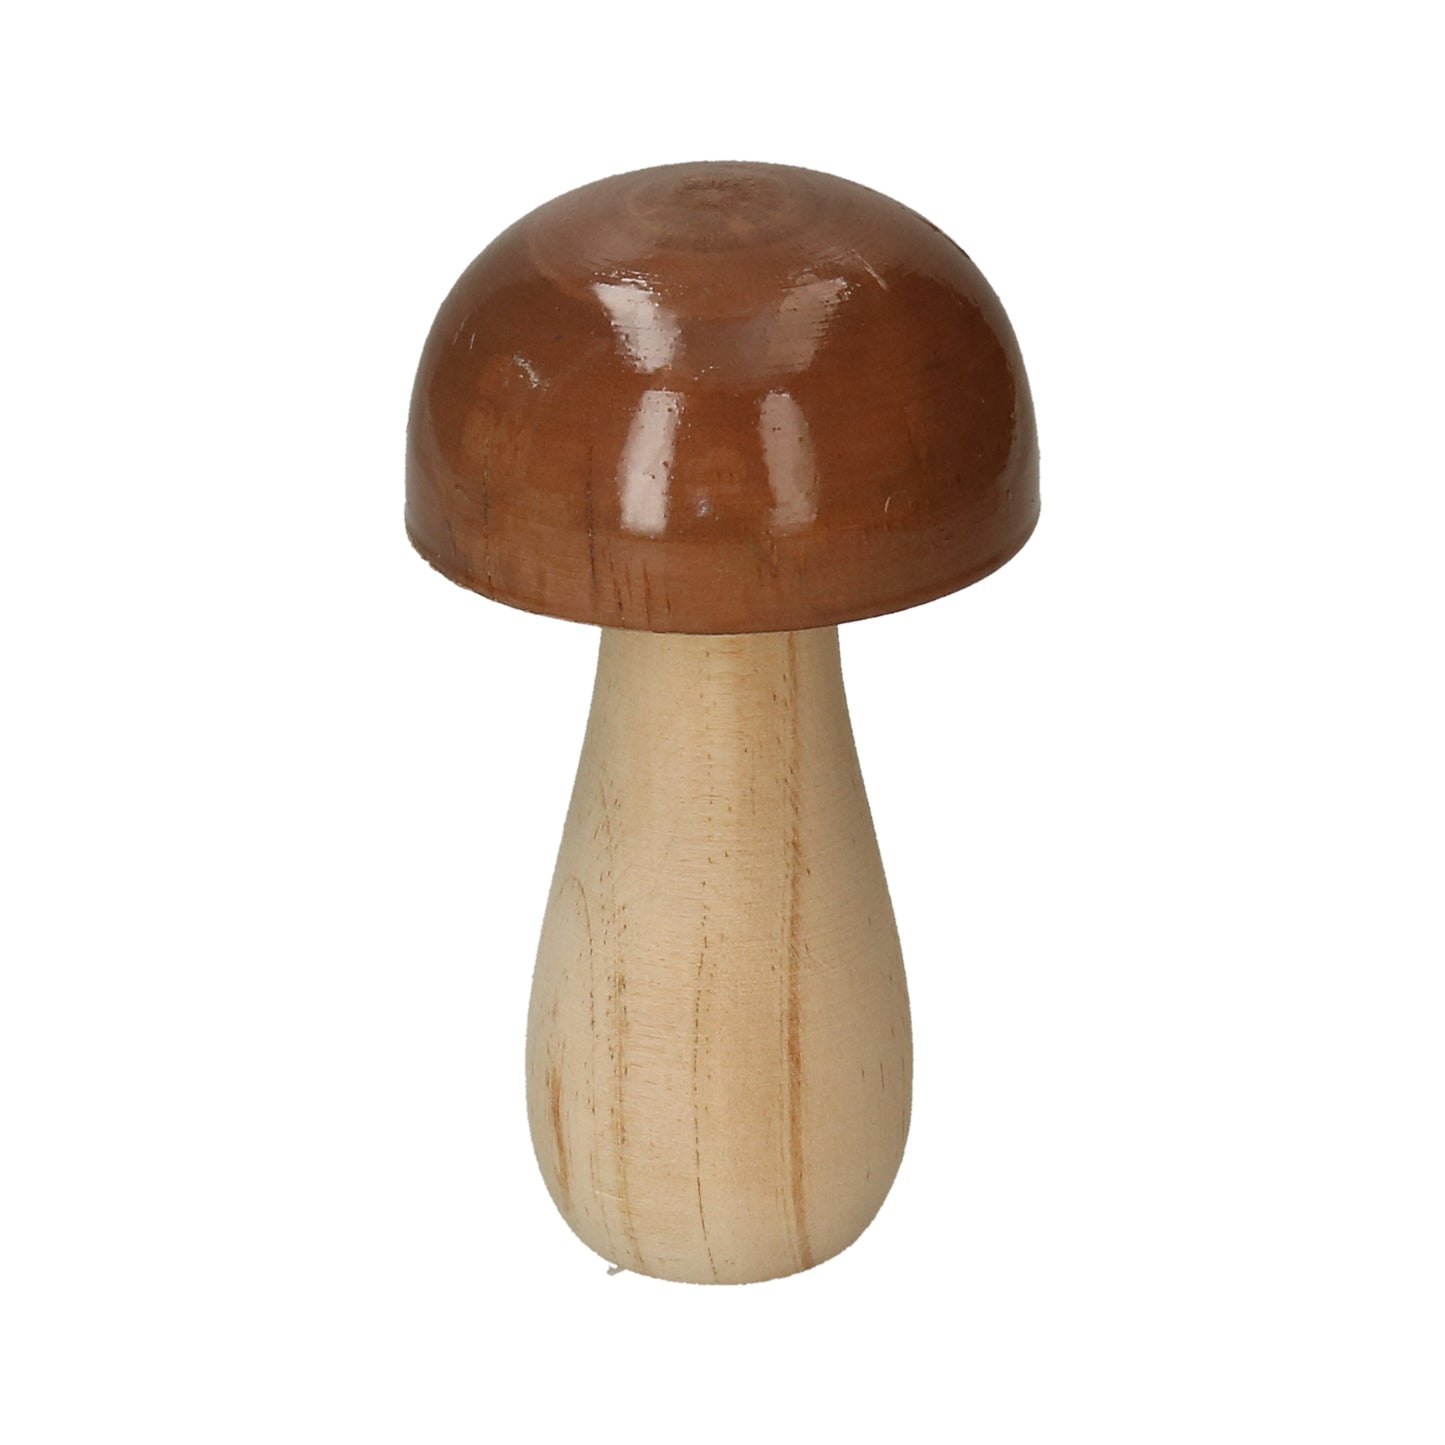 Figur Pilz aus Holz natur/braun/lackiert 2 Größen